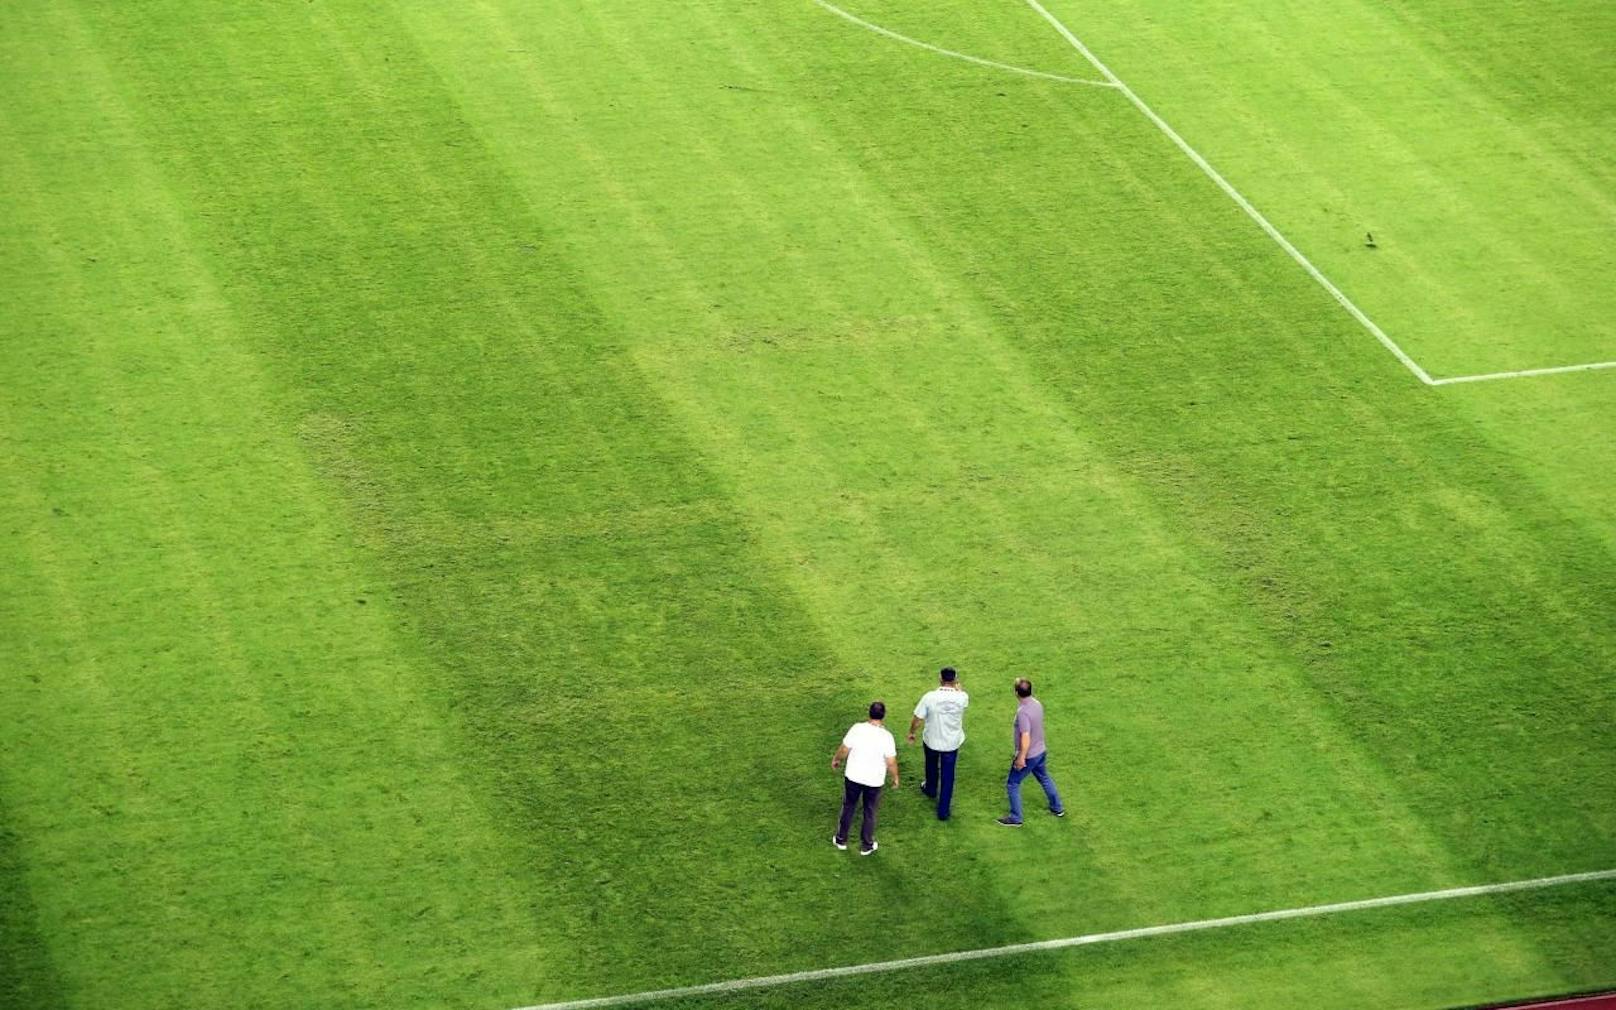 In der EM-Quali war in Split vor dem Italien-Match ein Hakenkreuz auf dem Spielfeld zu sehen. Die UEFA bestrafte Kroatien mit zwei Geisterspielen.